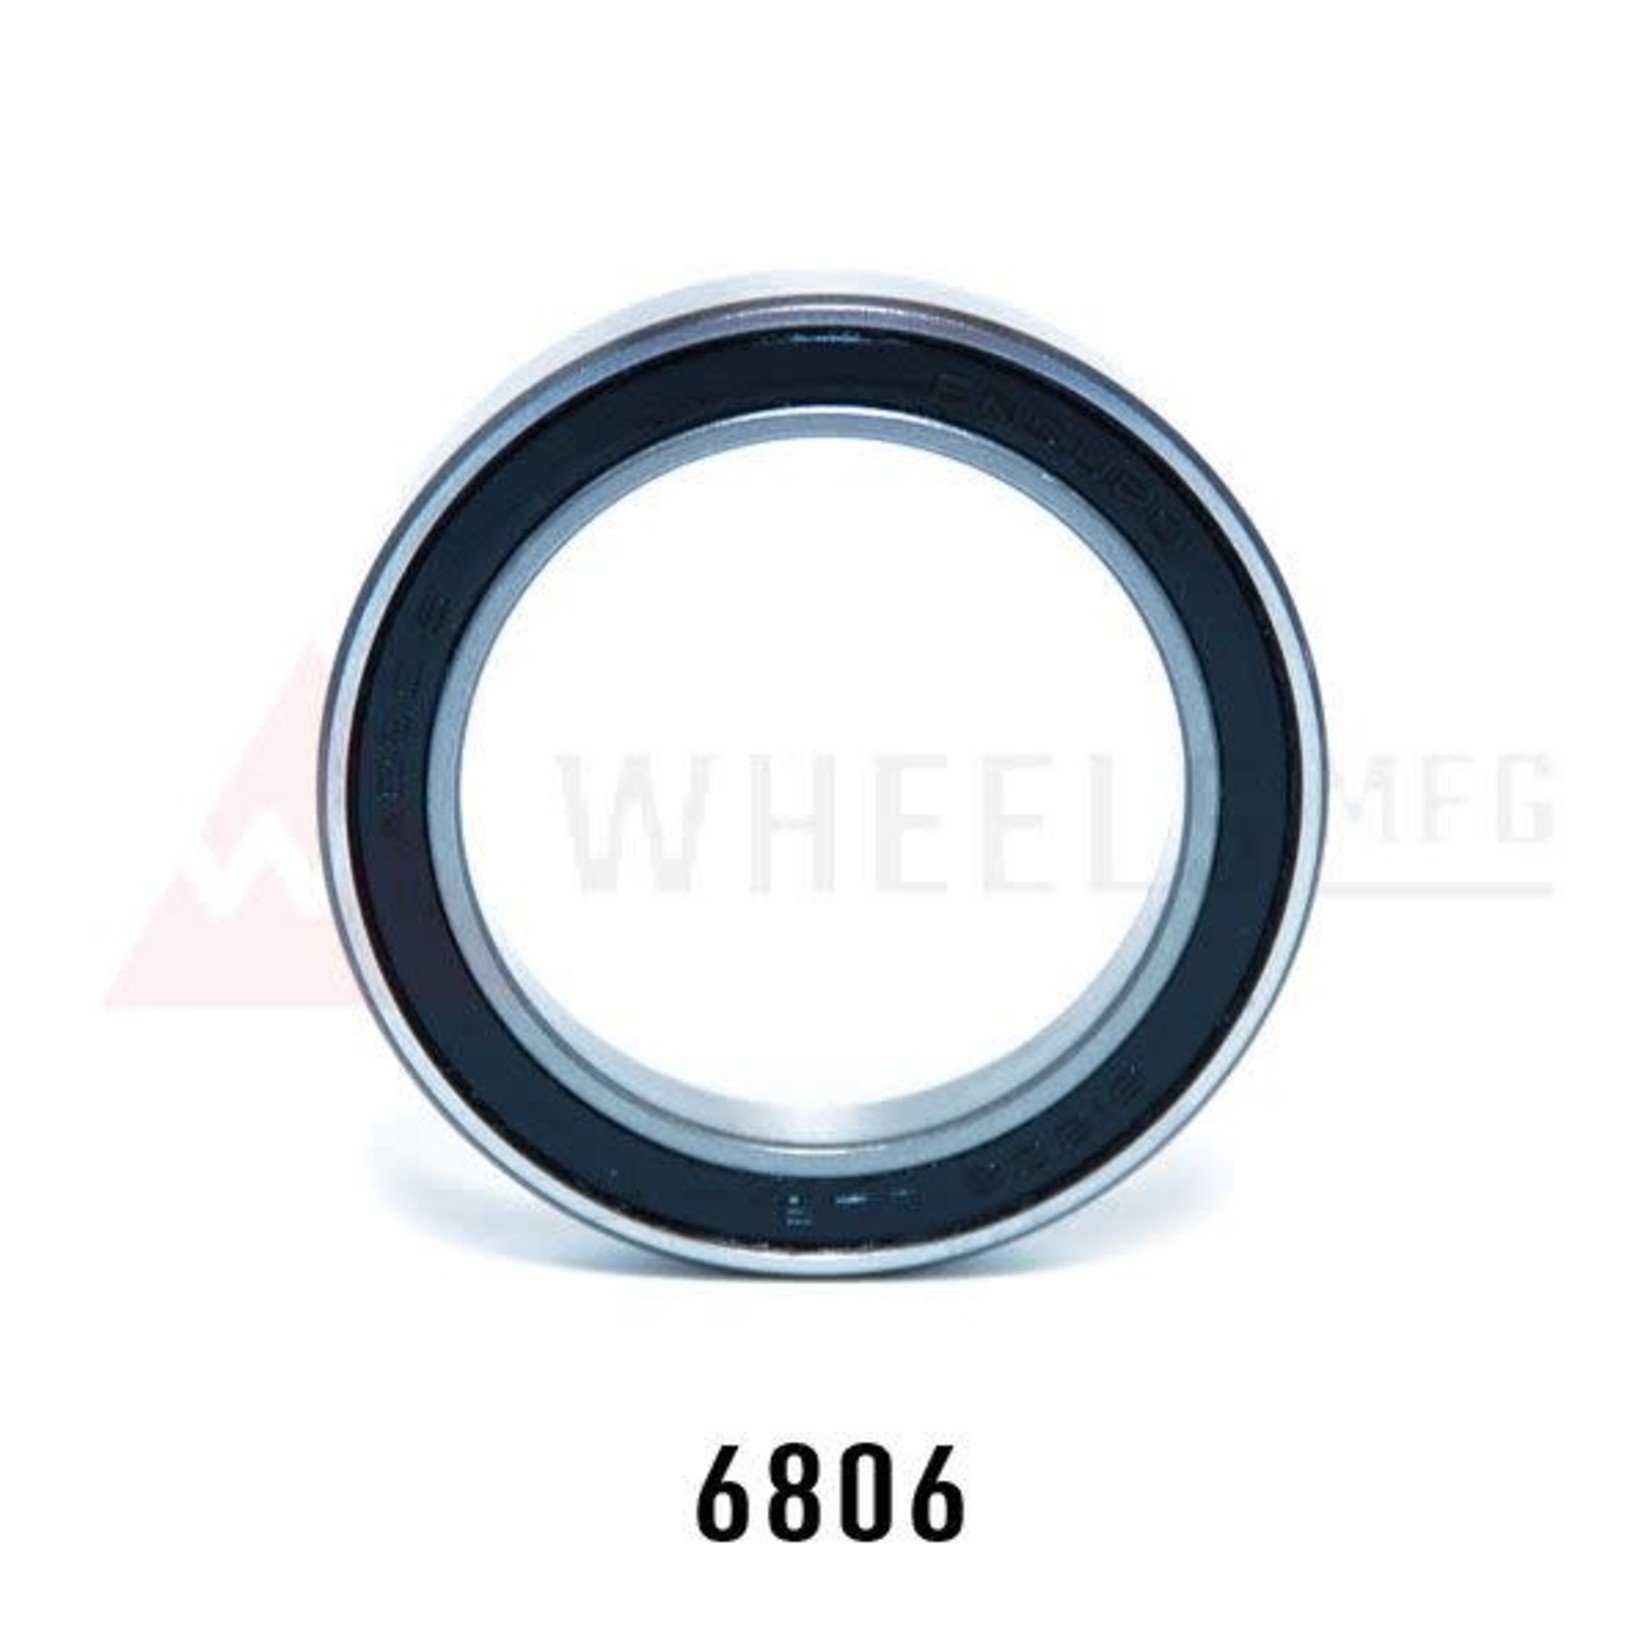 Wheels Manufacturing Wheels Mfg Bottom Bracket - Enduro 6806 ABEC-3 Sealed Bearings, Bag of 2